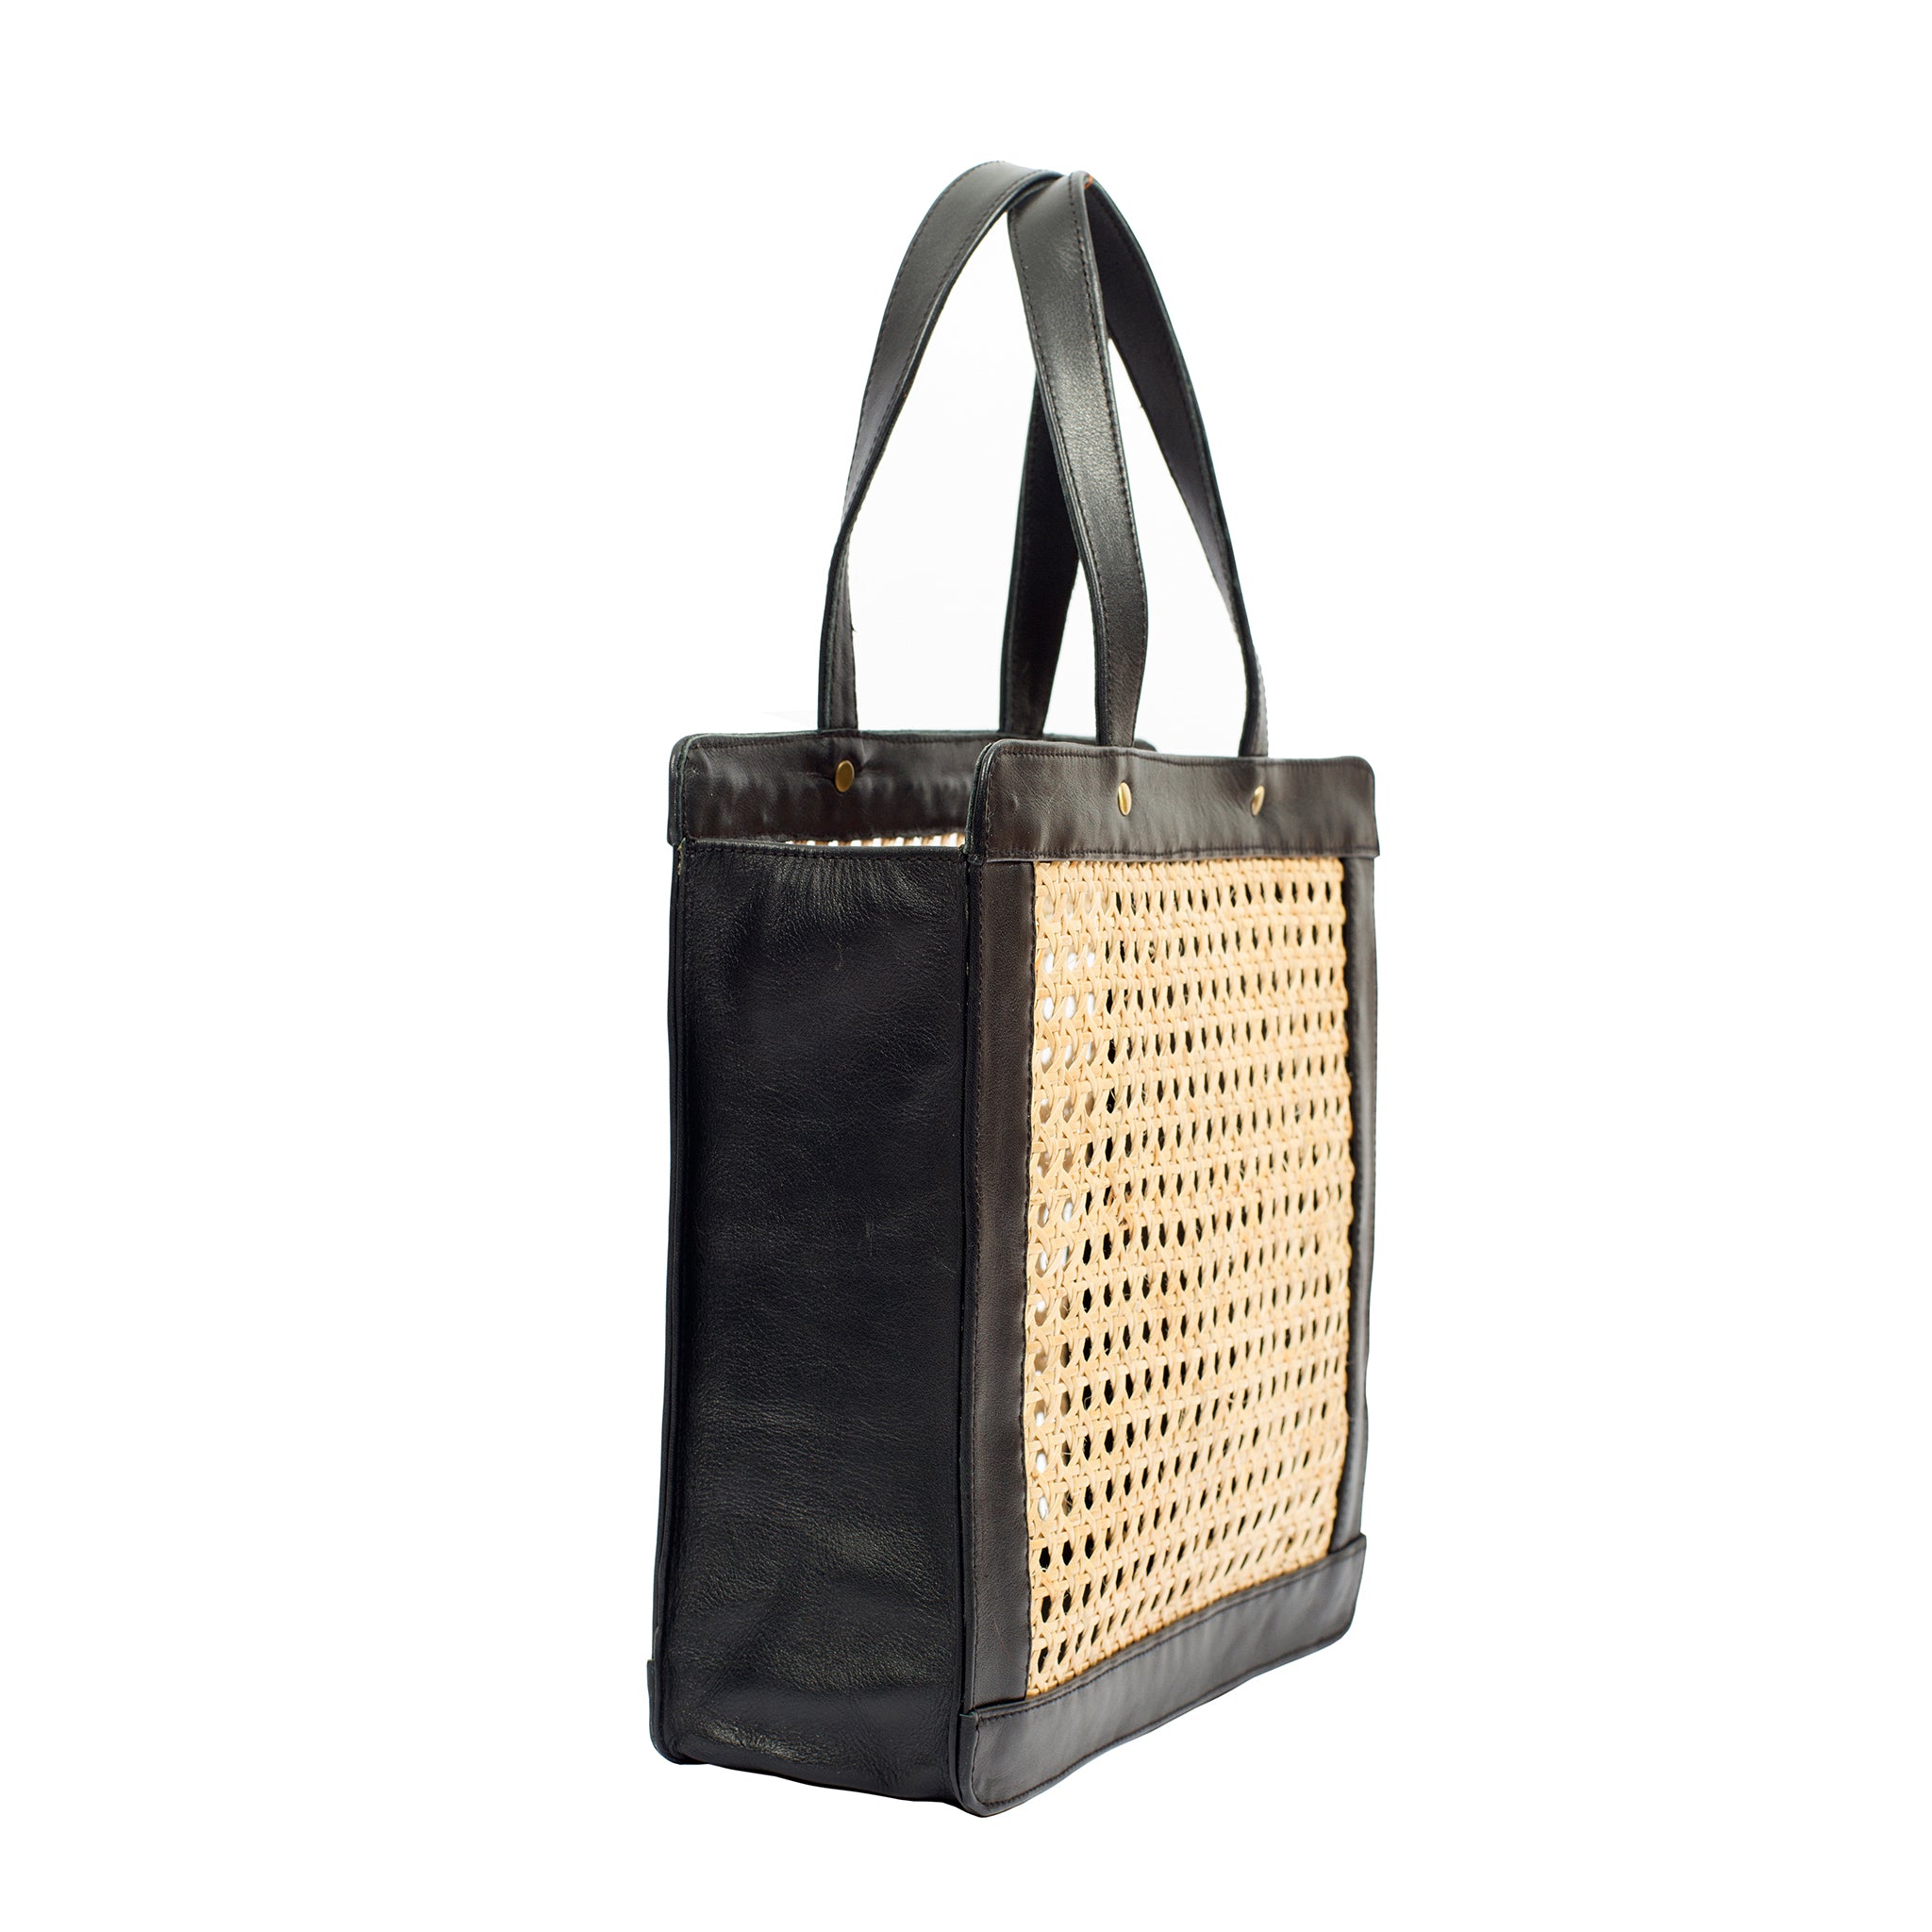 Black Tote bag; Rattan Bag; Rattan Shoulder Bag; Rattan Handbag; Woman Rattan Tote Bag; Rattan Collection; Rattan Bags 2019